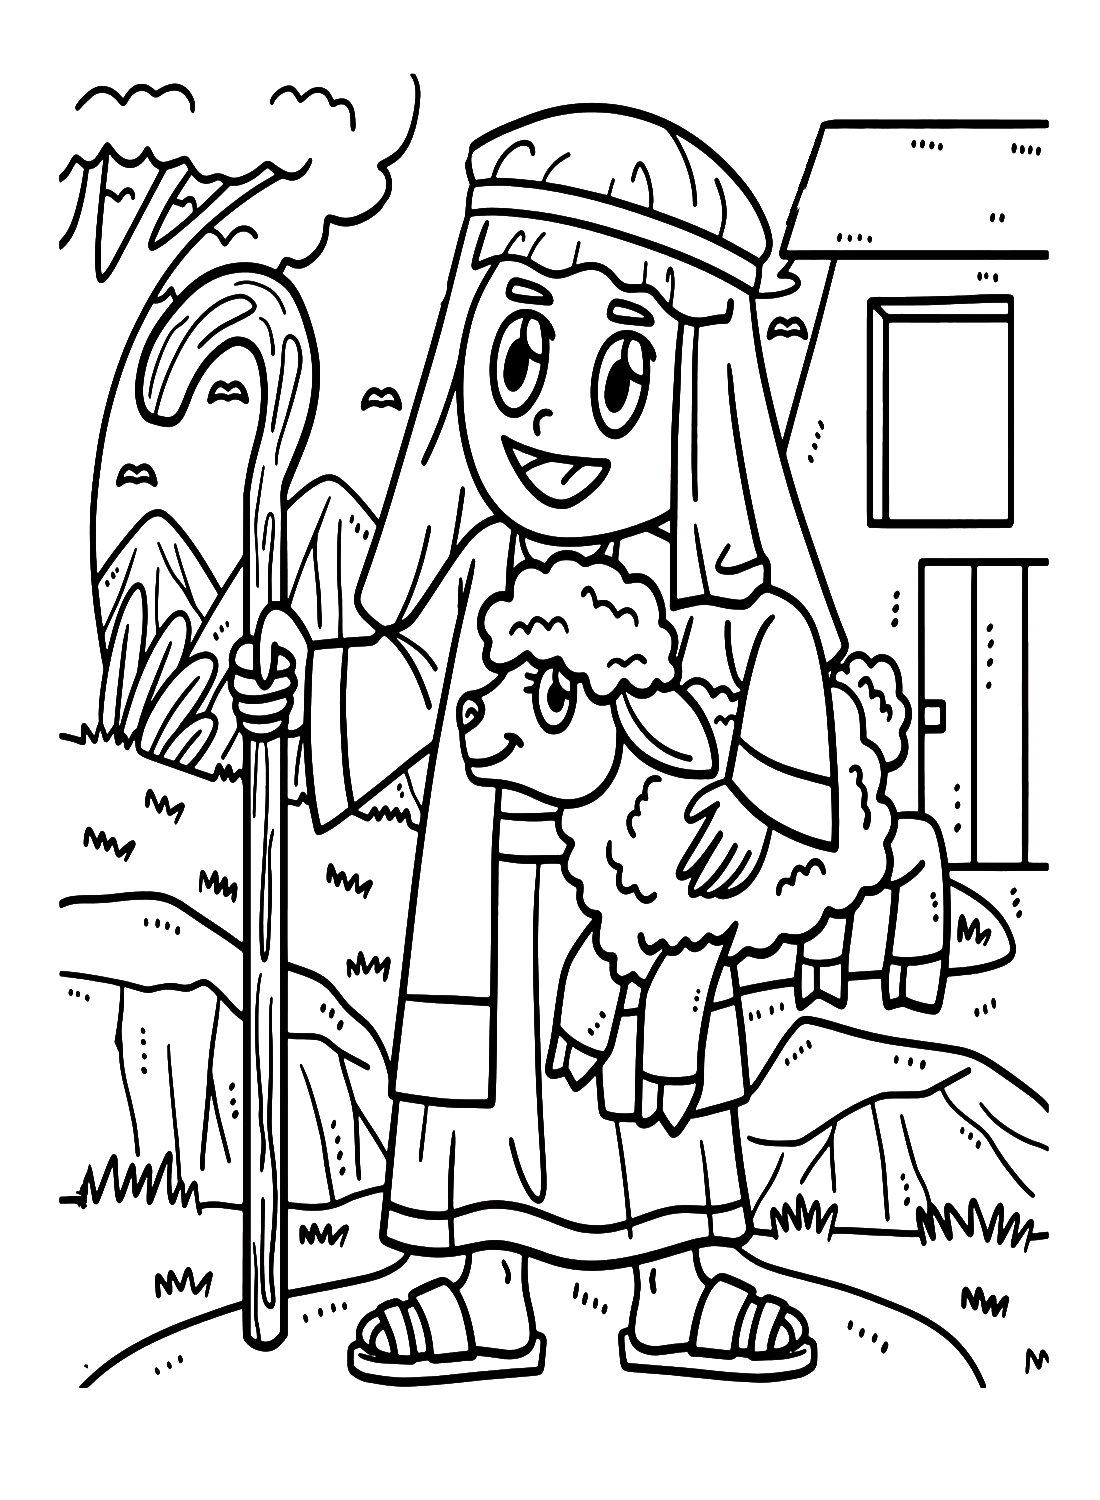 Христианский пастырь держит ягненка из ягненка